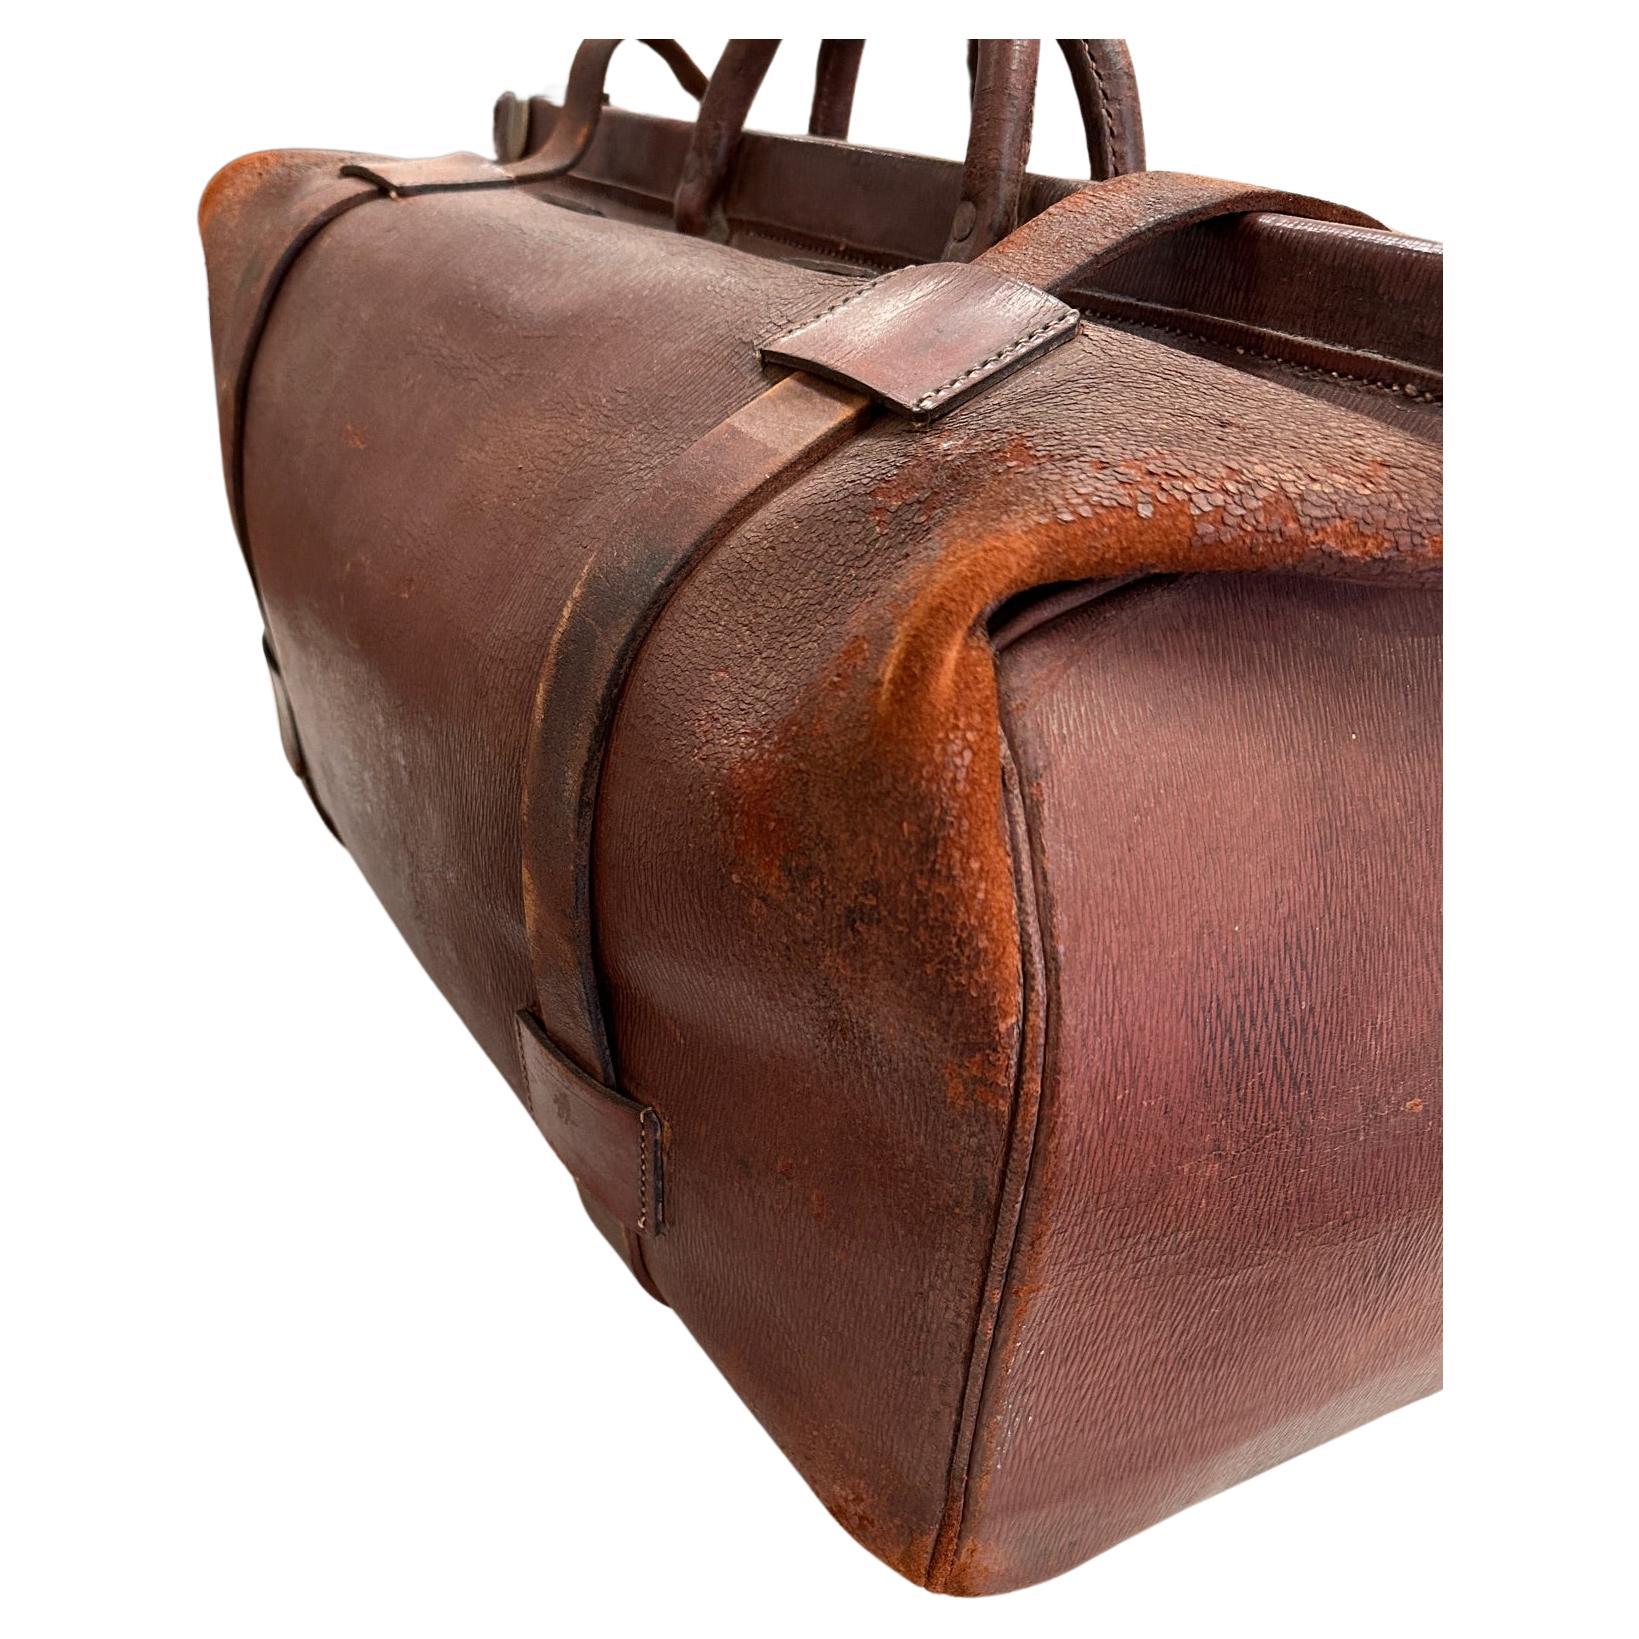 Diese schöne 19. Jahrhundert großen Maßstab Antike Leder Reisetasche oder Gepäck ist wirklich ein besonderes Stück.  Die Tasche öffnet sich und alle Messingbeschläge sind in Ordnung. Die Tasche hat die Form eines Arztkoffers, ist aber viel größer -